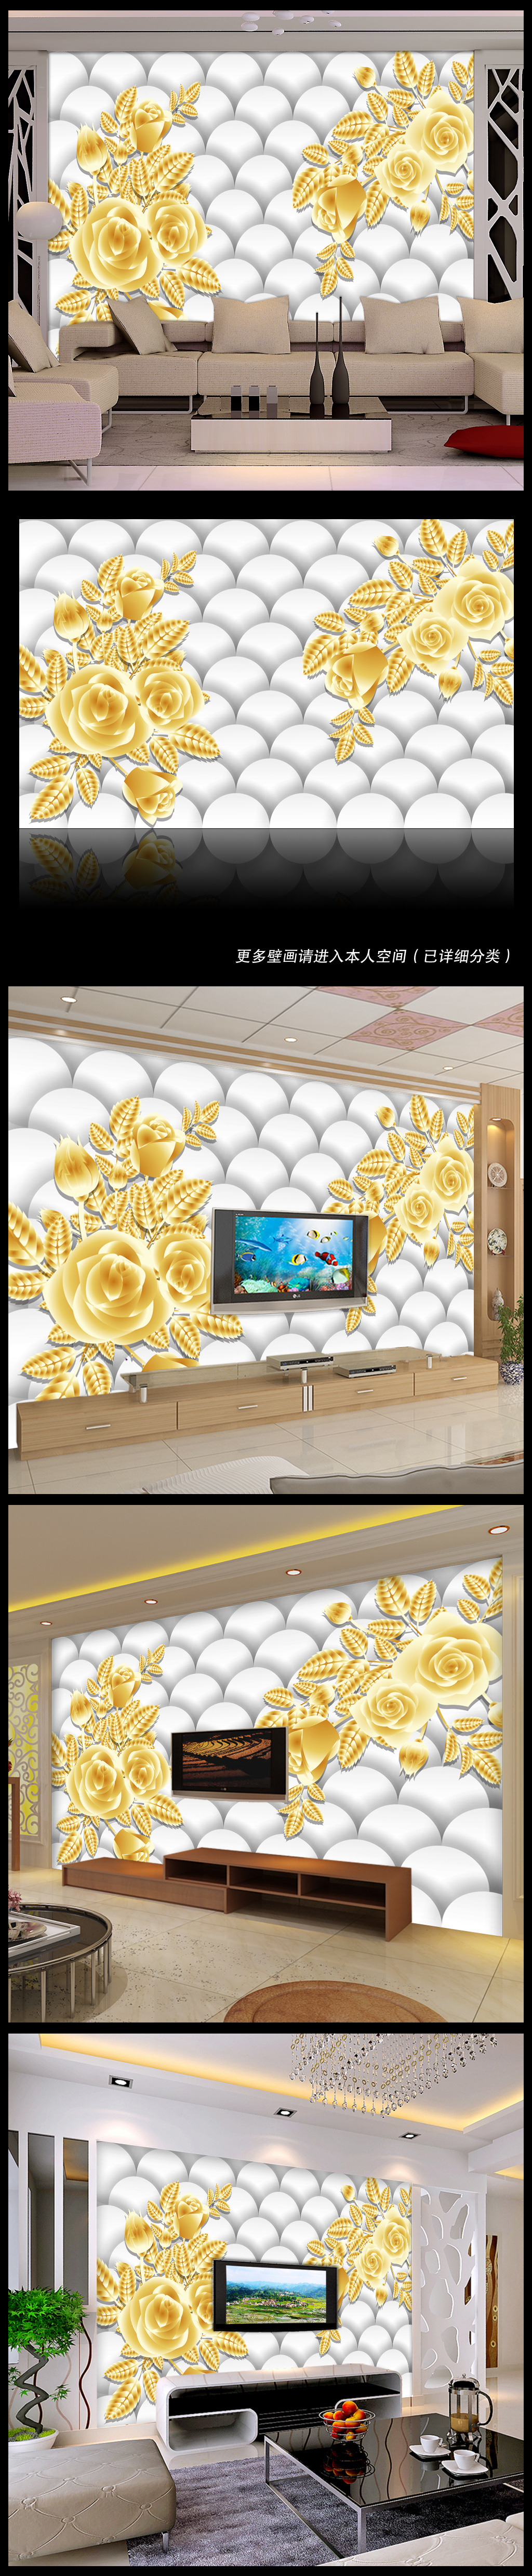 壁纸 背景墙/[版权图片]鑫色3D玫瑰电视背景墙壁纸壁画